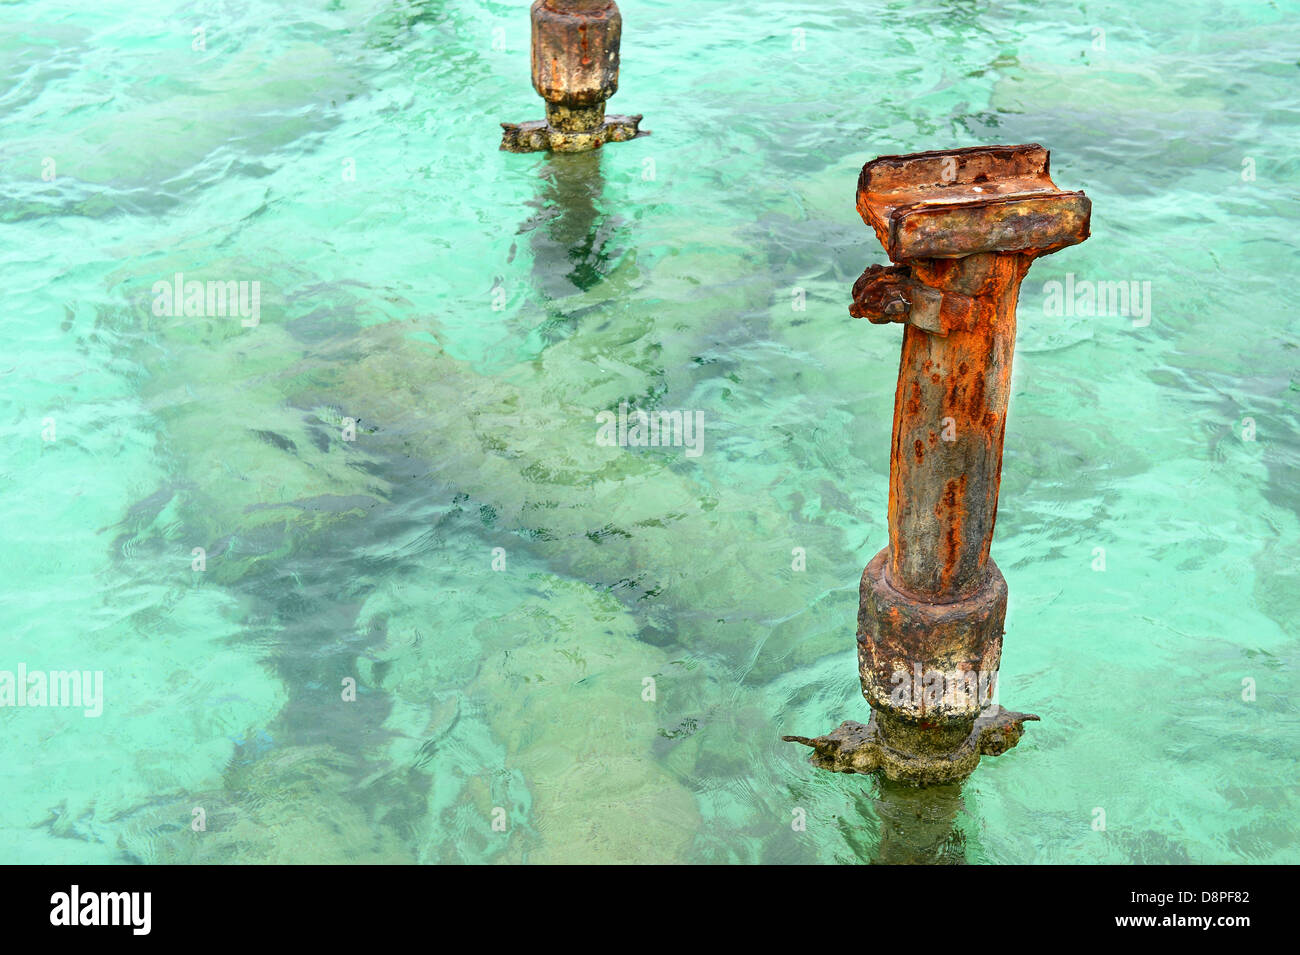 Rusted metal puestos desde el muelle en aguas del Caribe claras Foto de stock